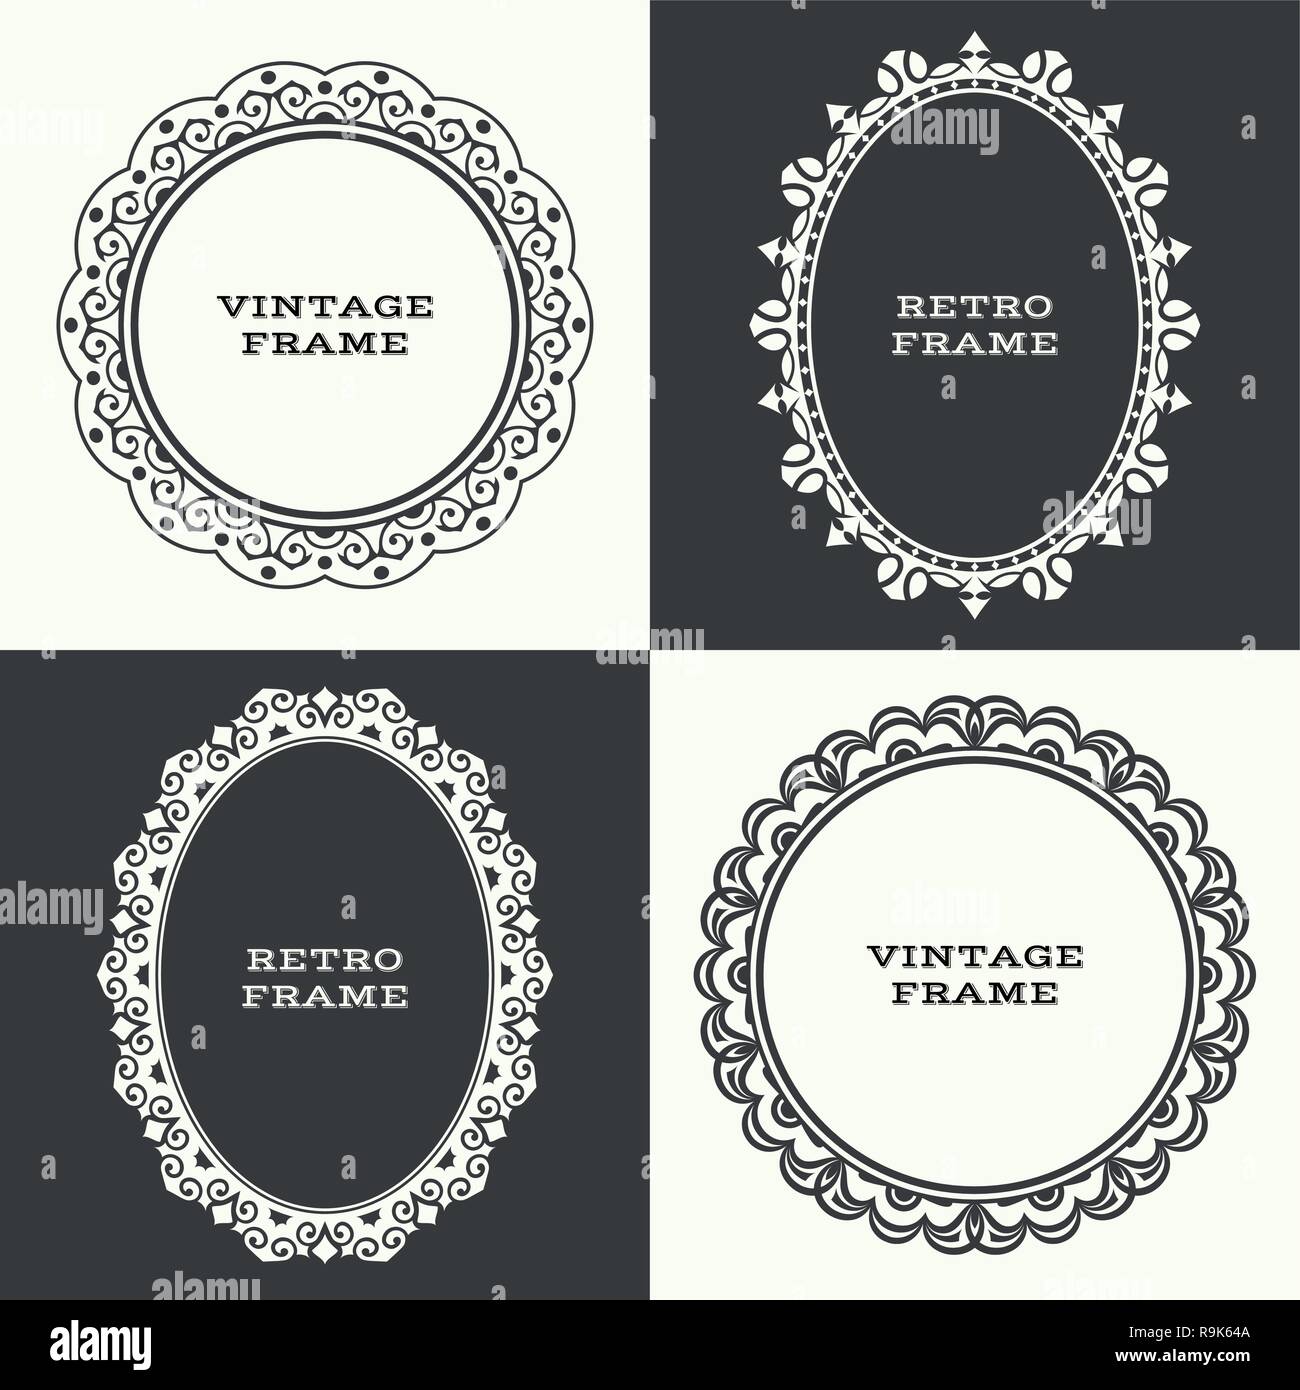 Kreisförmige barocke Muster. Runde Ornament. Vintage frame. Grußkarte. Hochzeit Einladung. Retro Style. Vektor logo Vorlage, Etiketten und Abzeichen Stock Vektor